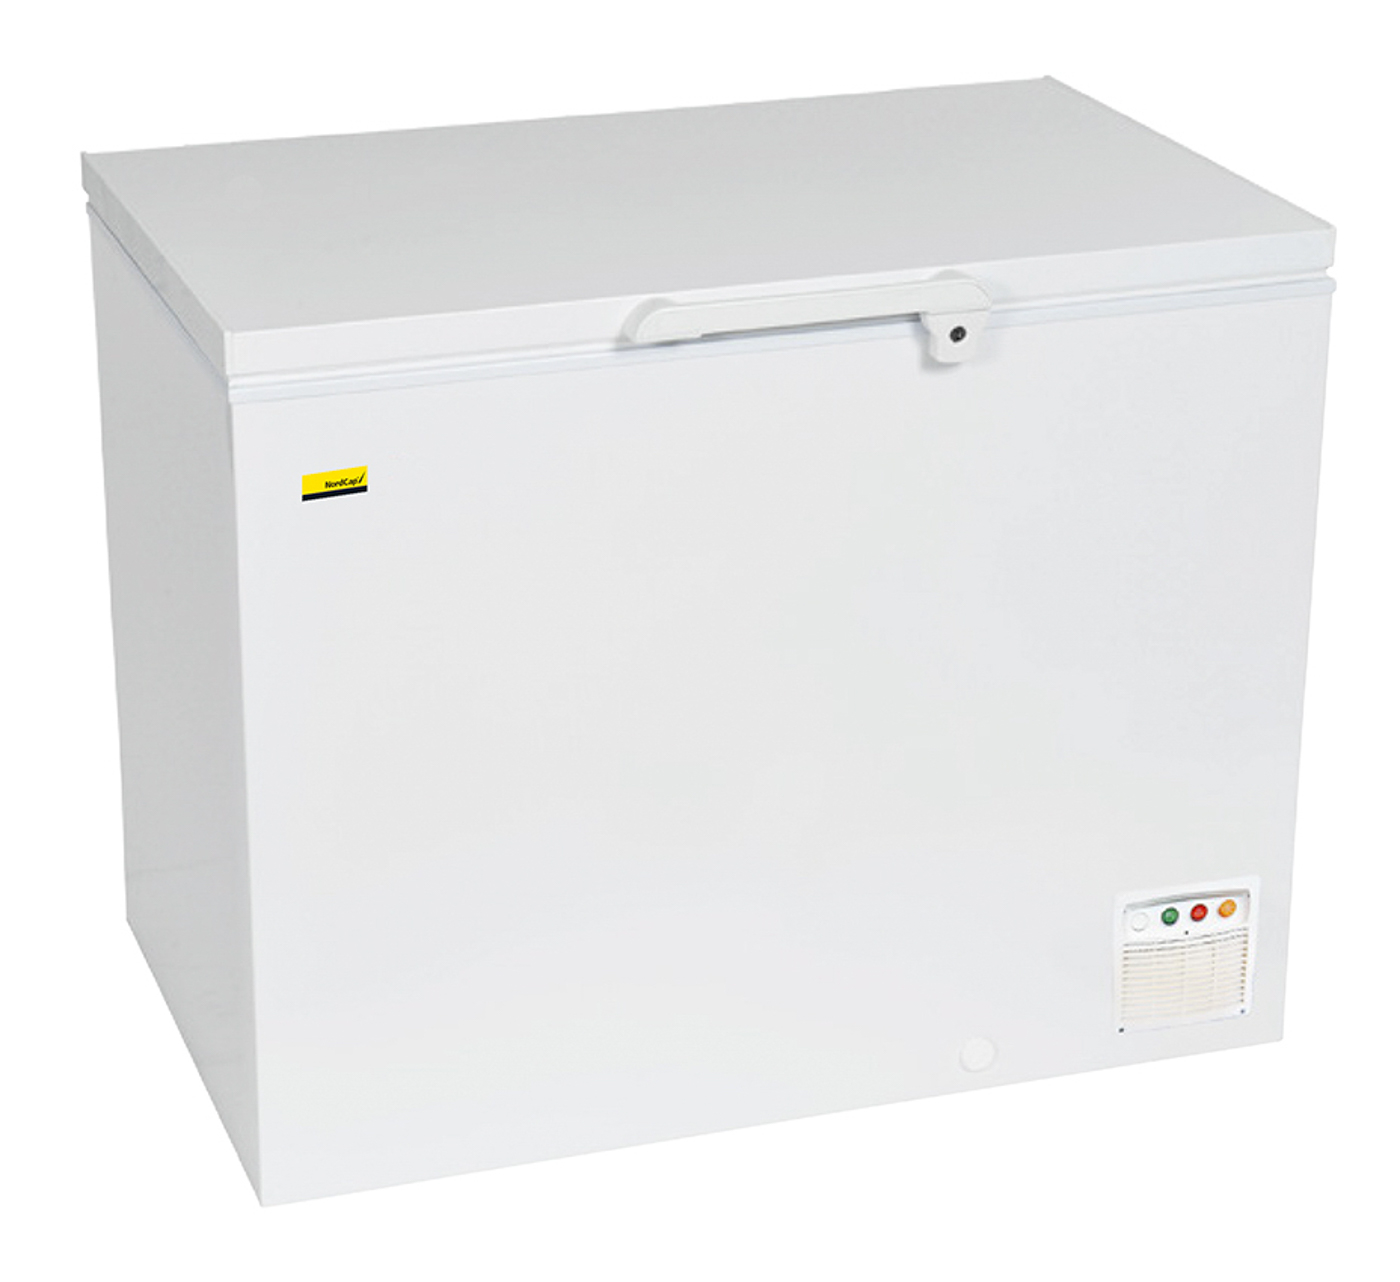 Nordcap Energiespar-Tiefkühltruhe EL 21 XLE, für Tiefkühlkost, steckerfertig, statische Kühlung